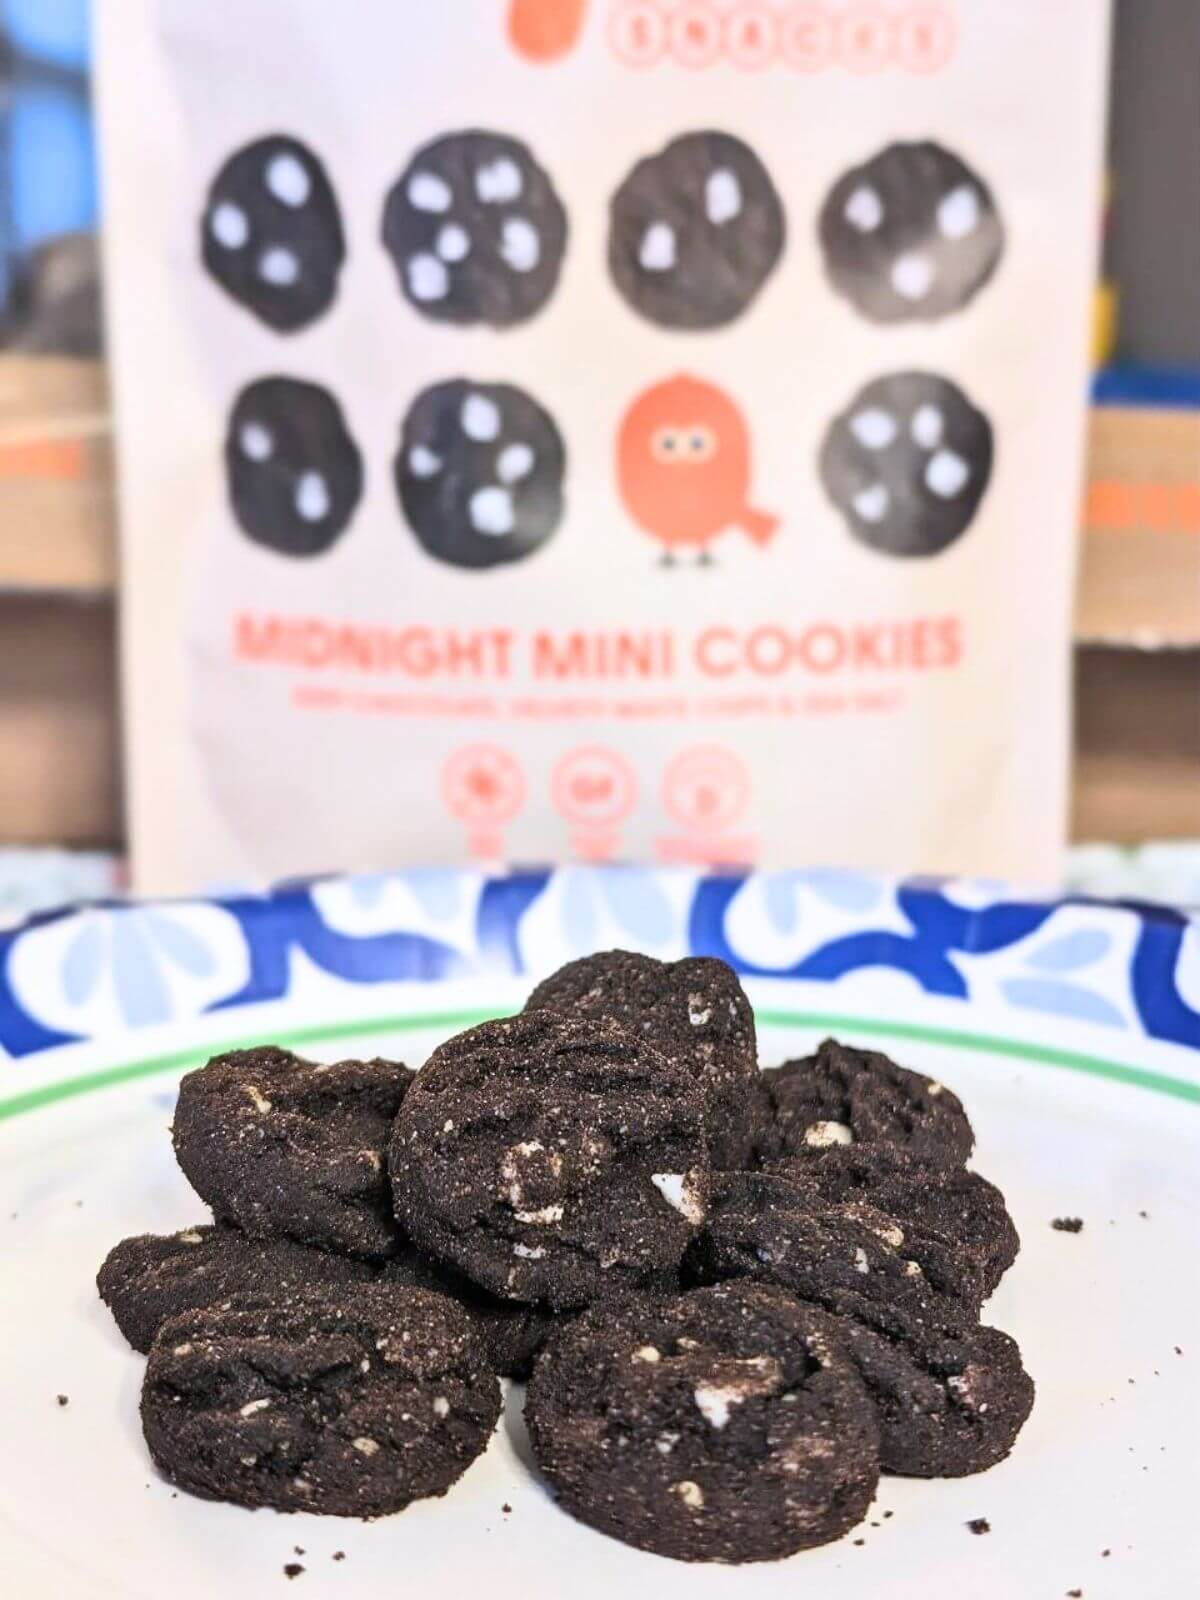 Myna Snacks Midnight Mini Cookies on a plate.